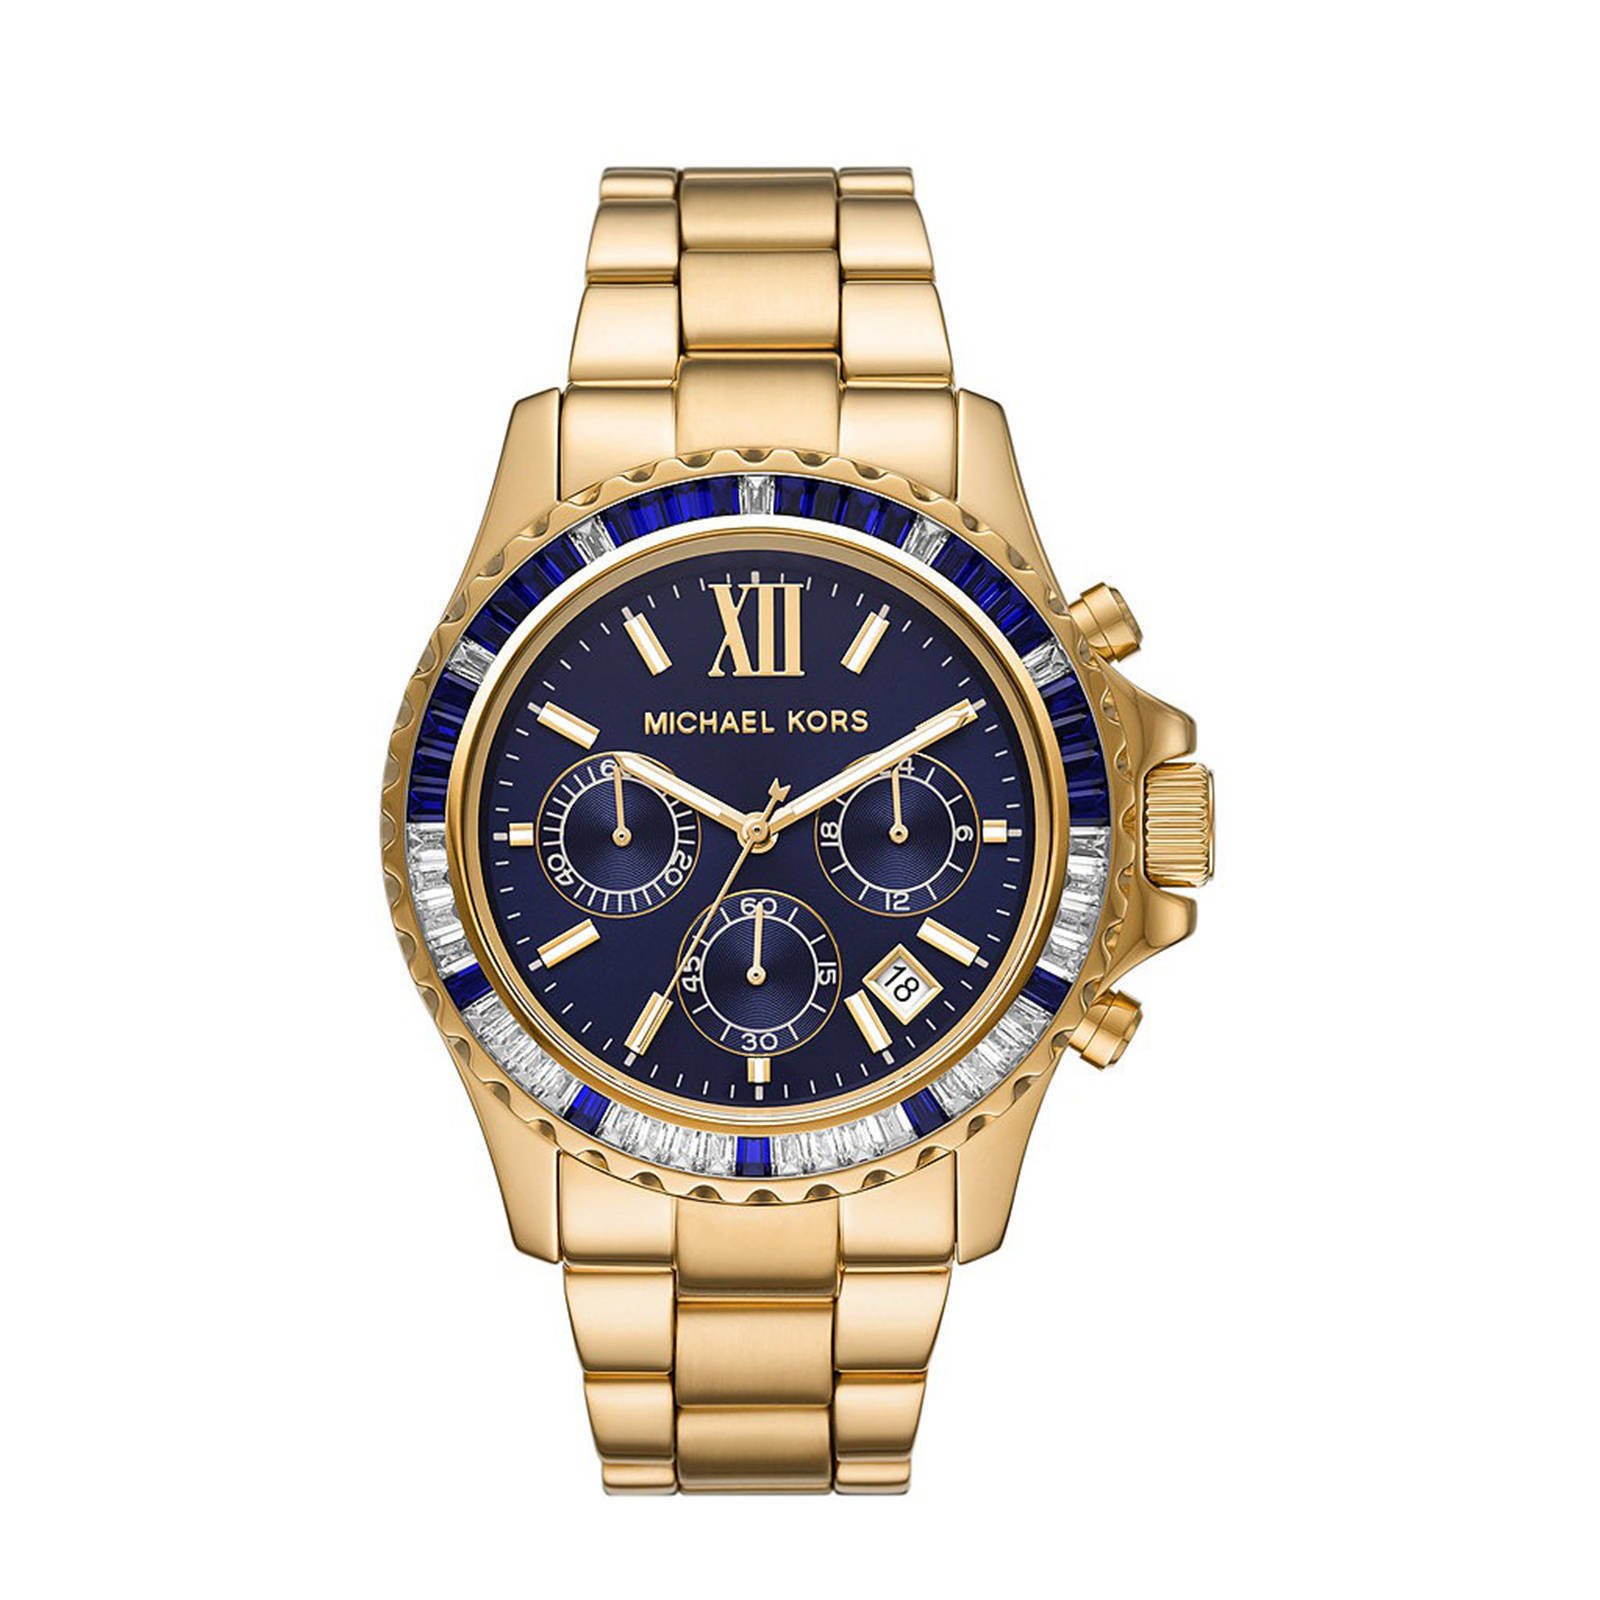 Sieraden Horloges Analoge horloges Michael Kors Analoog horloge goud zakelijke stijl 